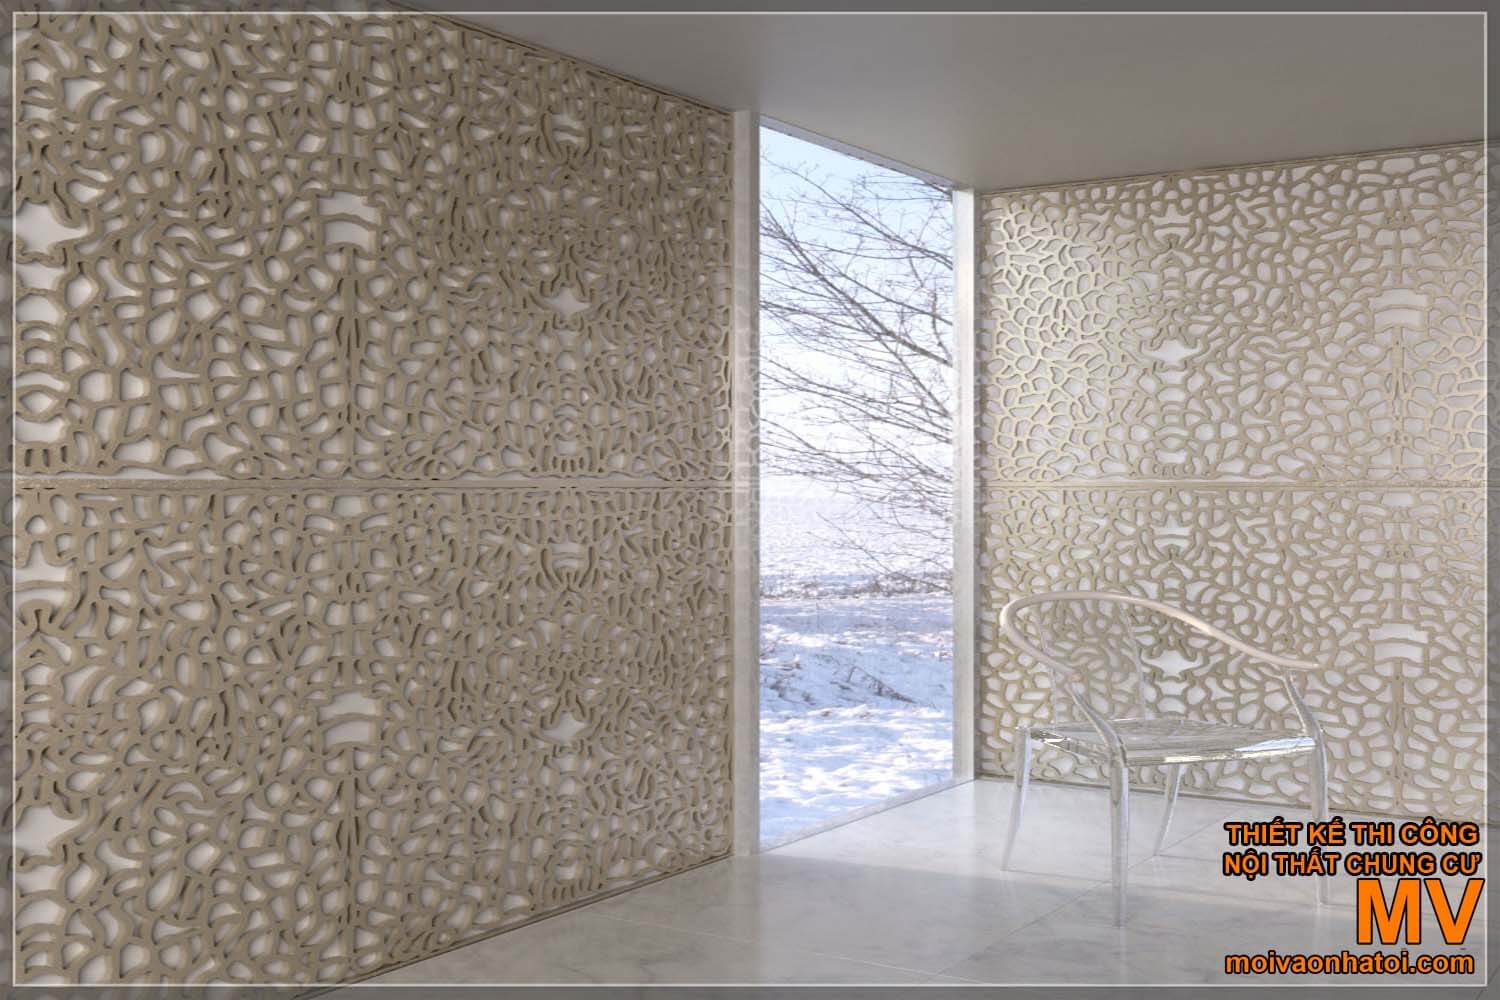 Pannelli da parete modello 3D con motivi complessi, colore beige.  